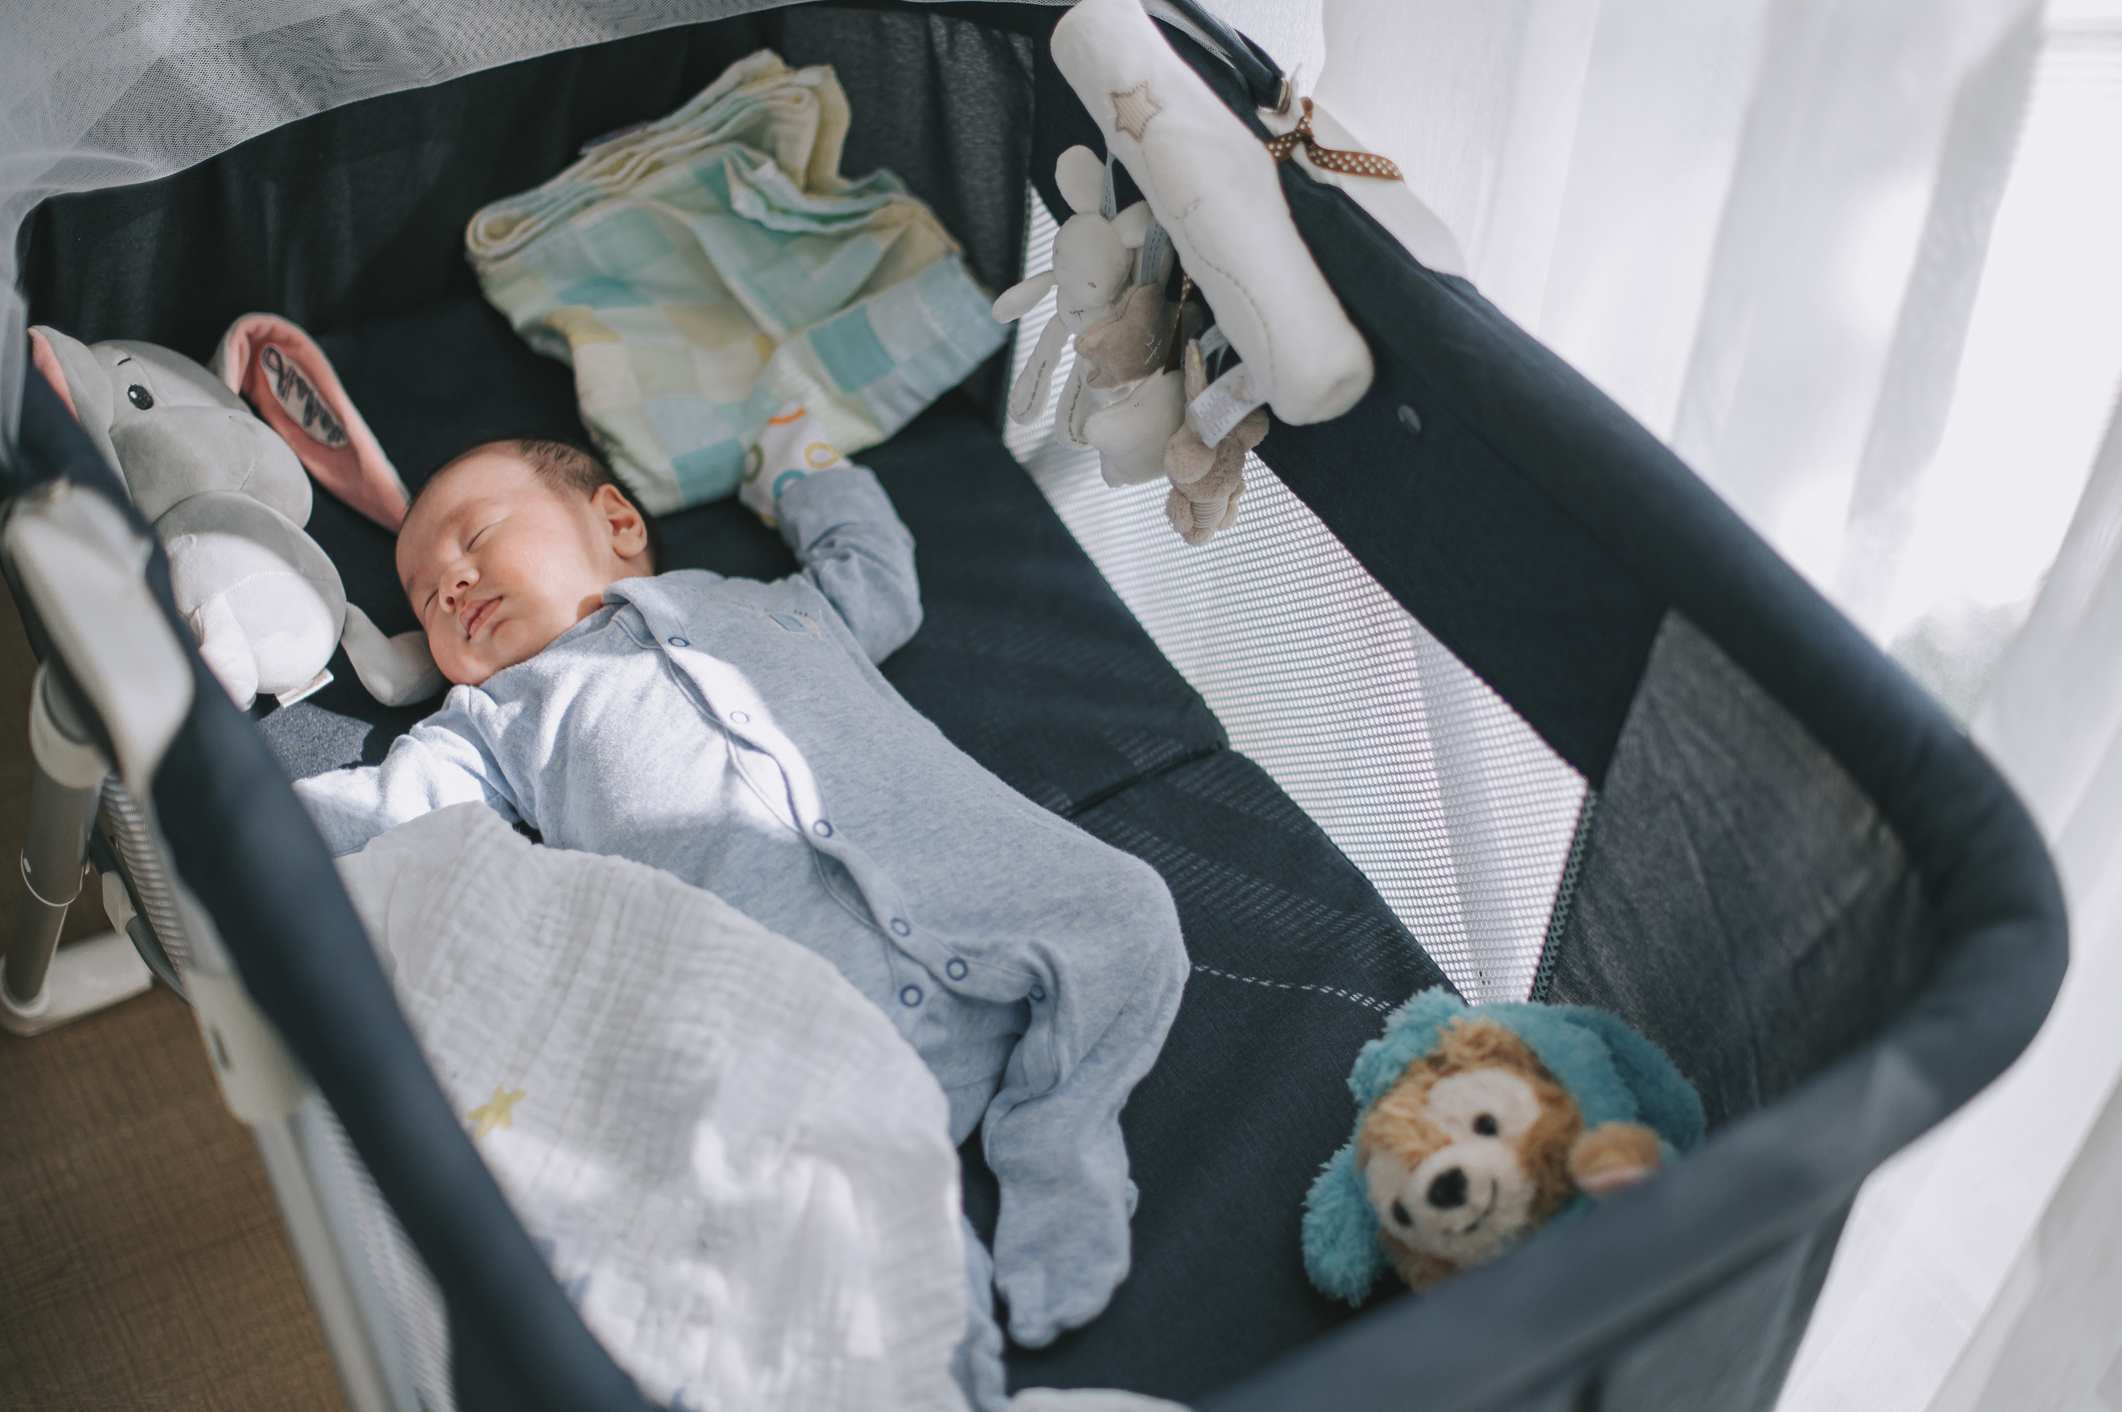 A baby asleep in a portable crib